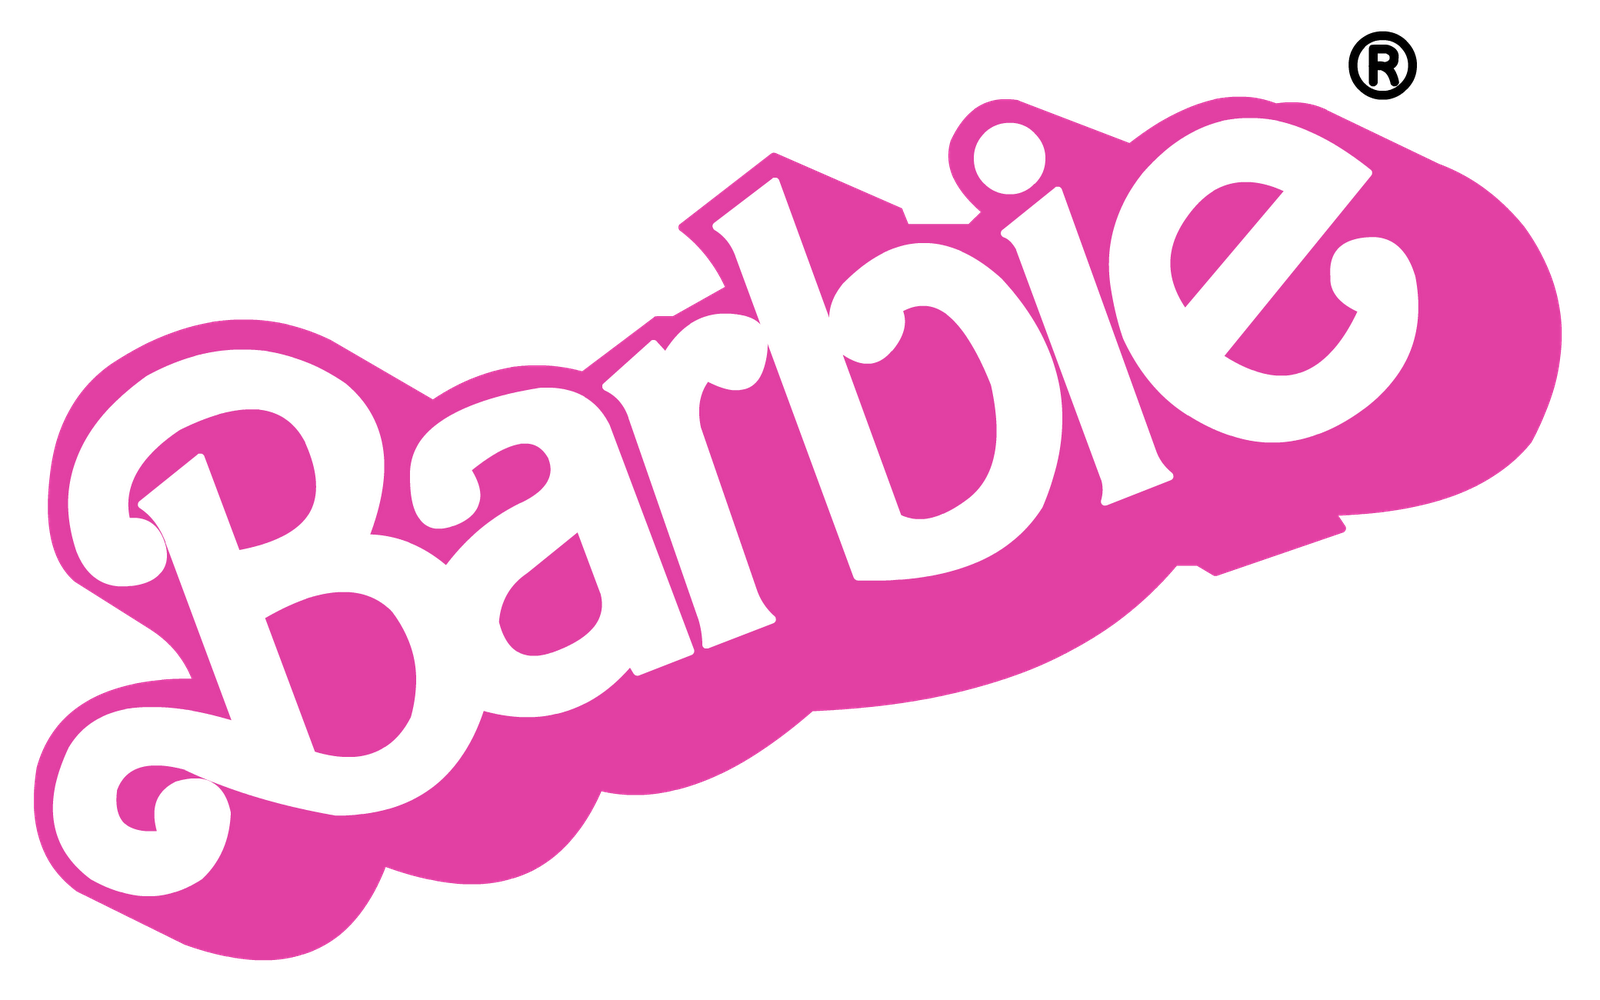 barbie clipart emblem